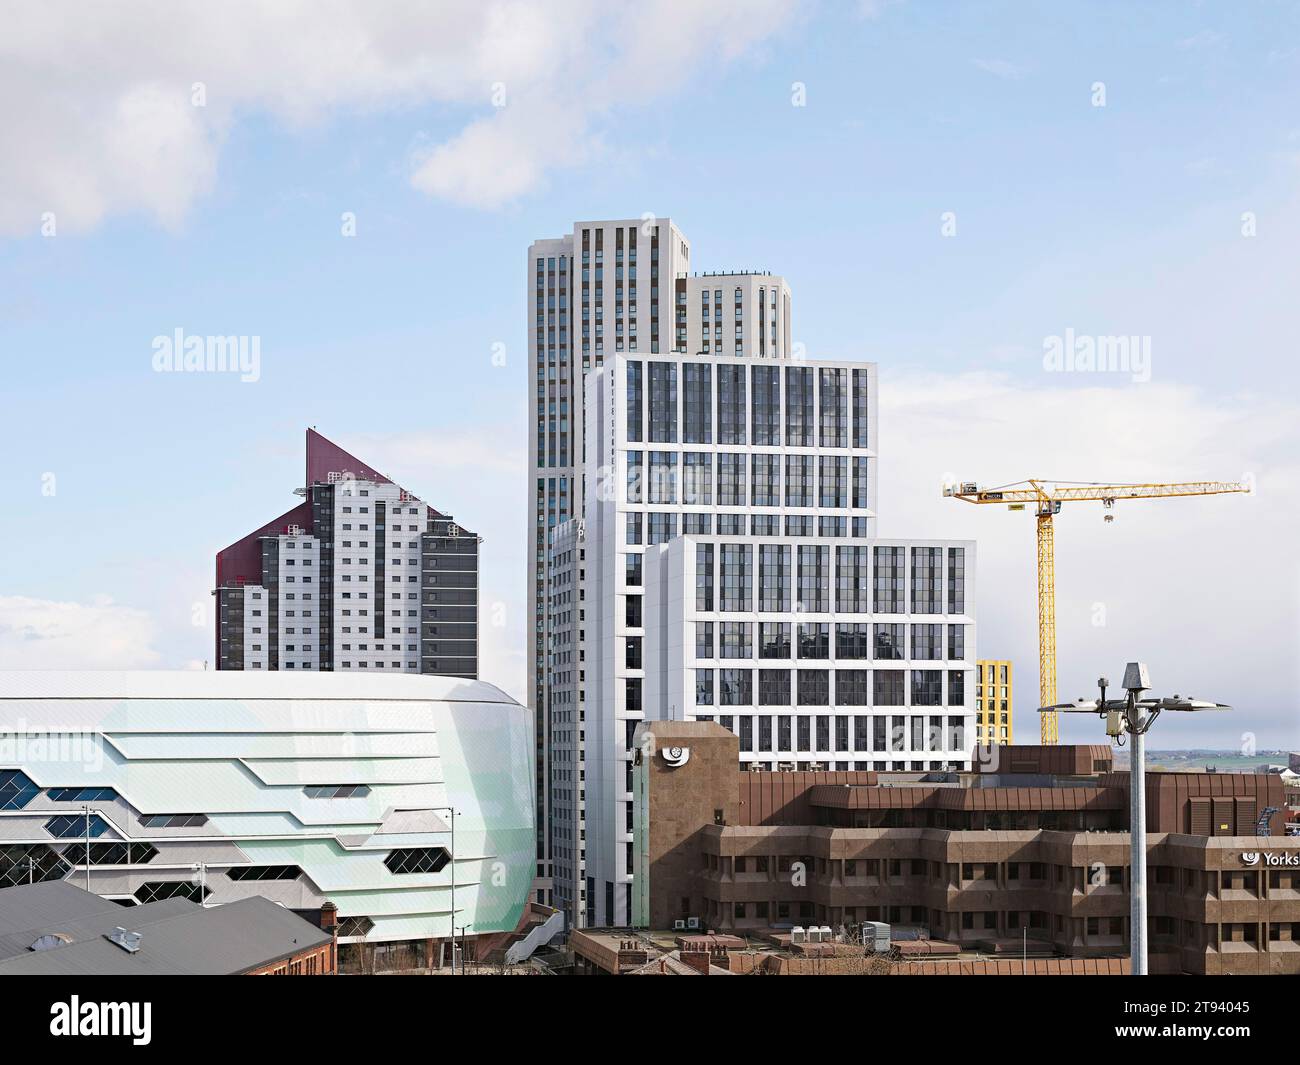 Hochhaus im urbanen Kontext. Altus House, Leeds, Großbritannien. Architekt: O'Connell East Architects, 2022. Stockfoto